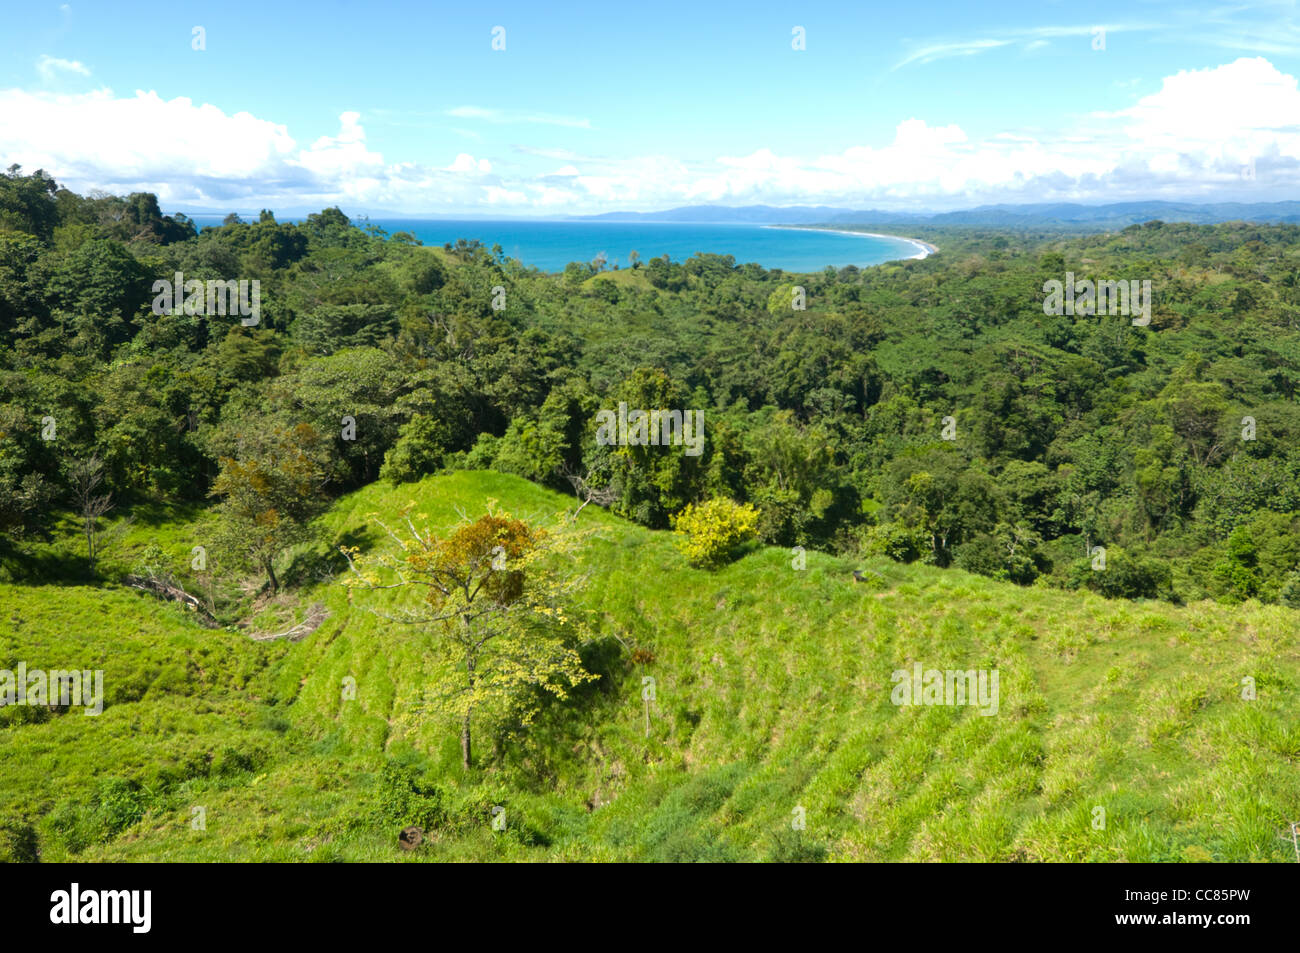 Parte de la selva tropical de tierras bajas de la provincia de Puntarenas Costa Rica Foto de stock